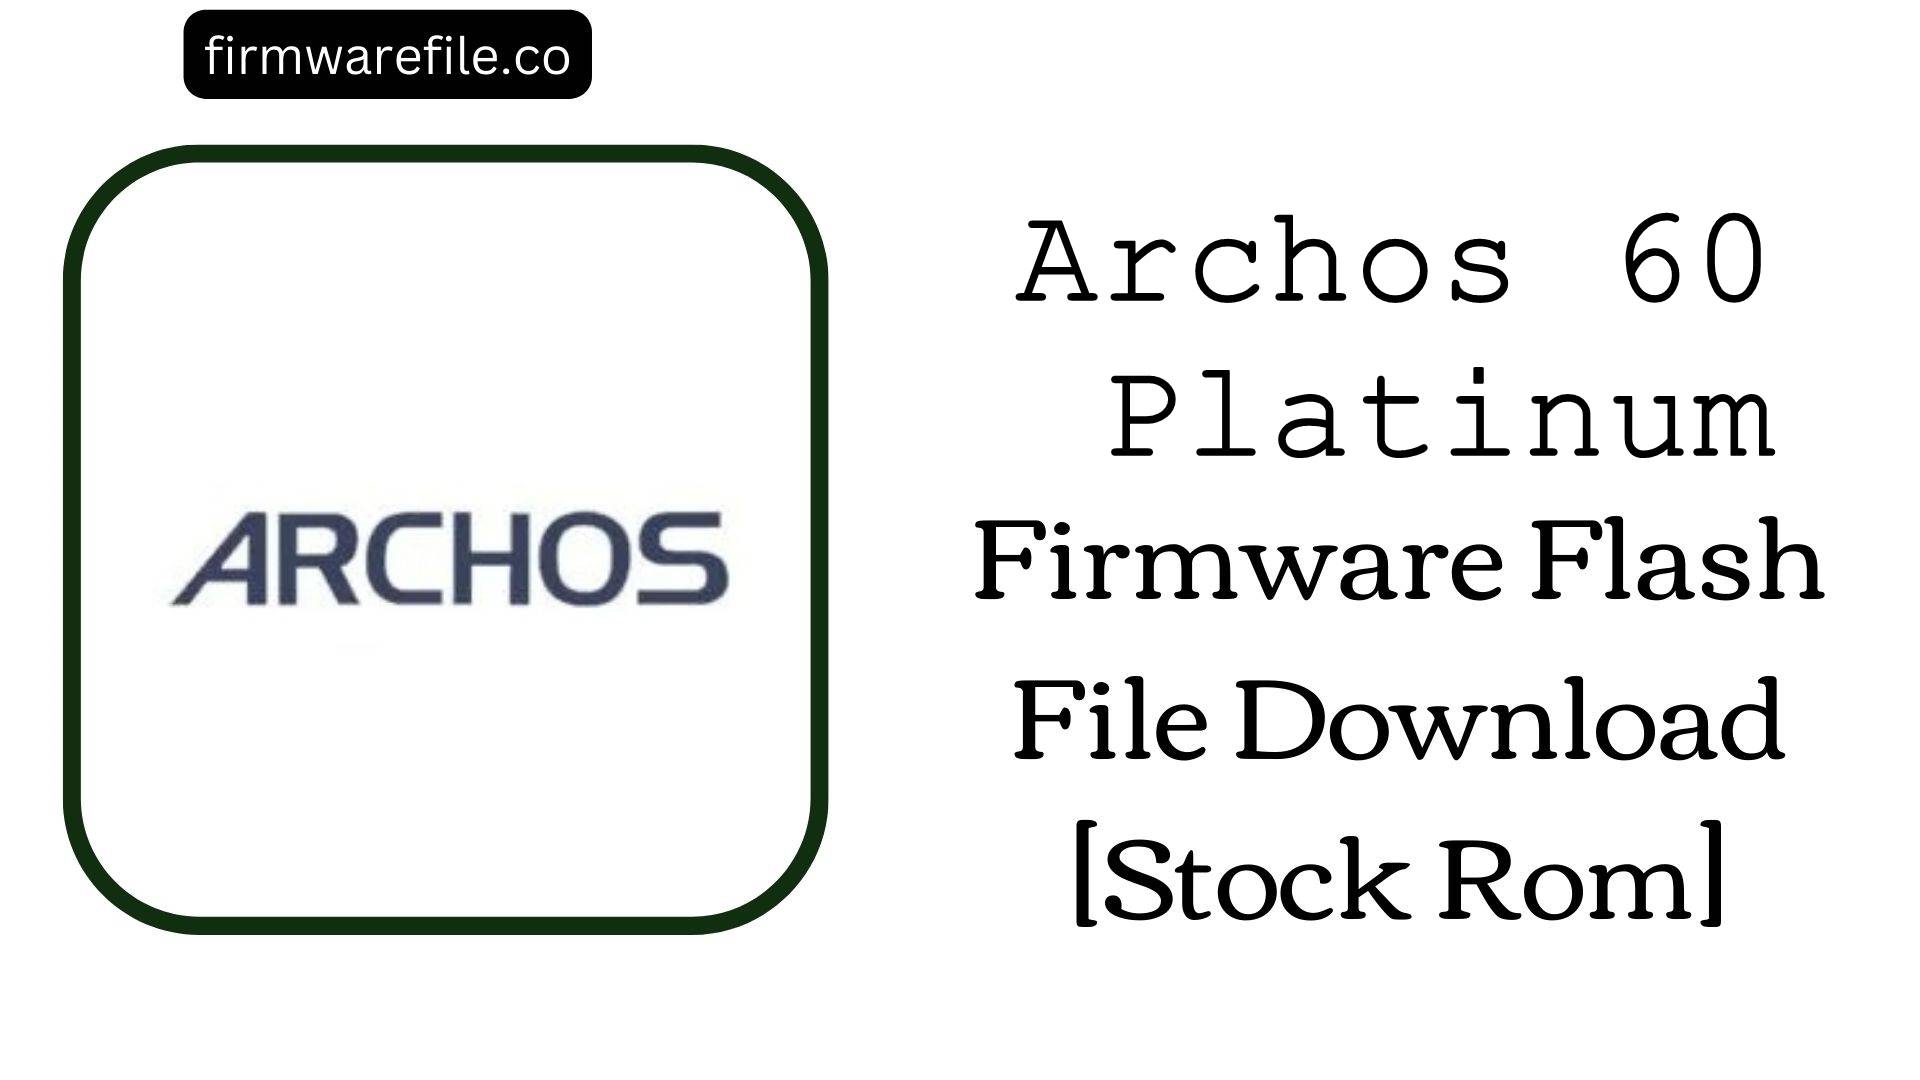 Archos 60 Platinum